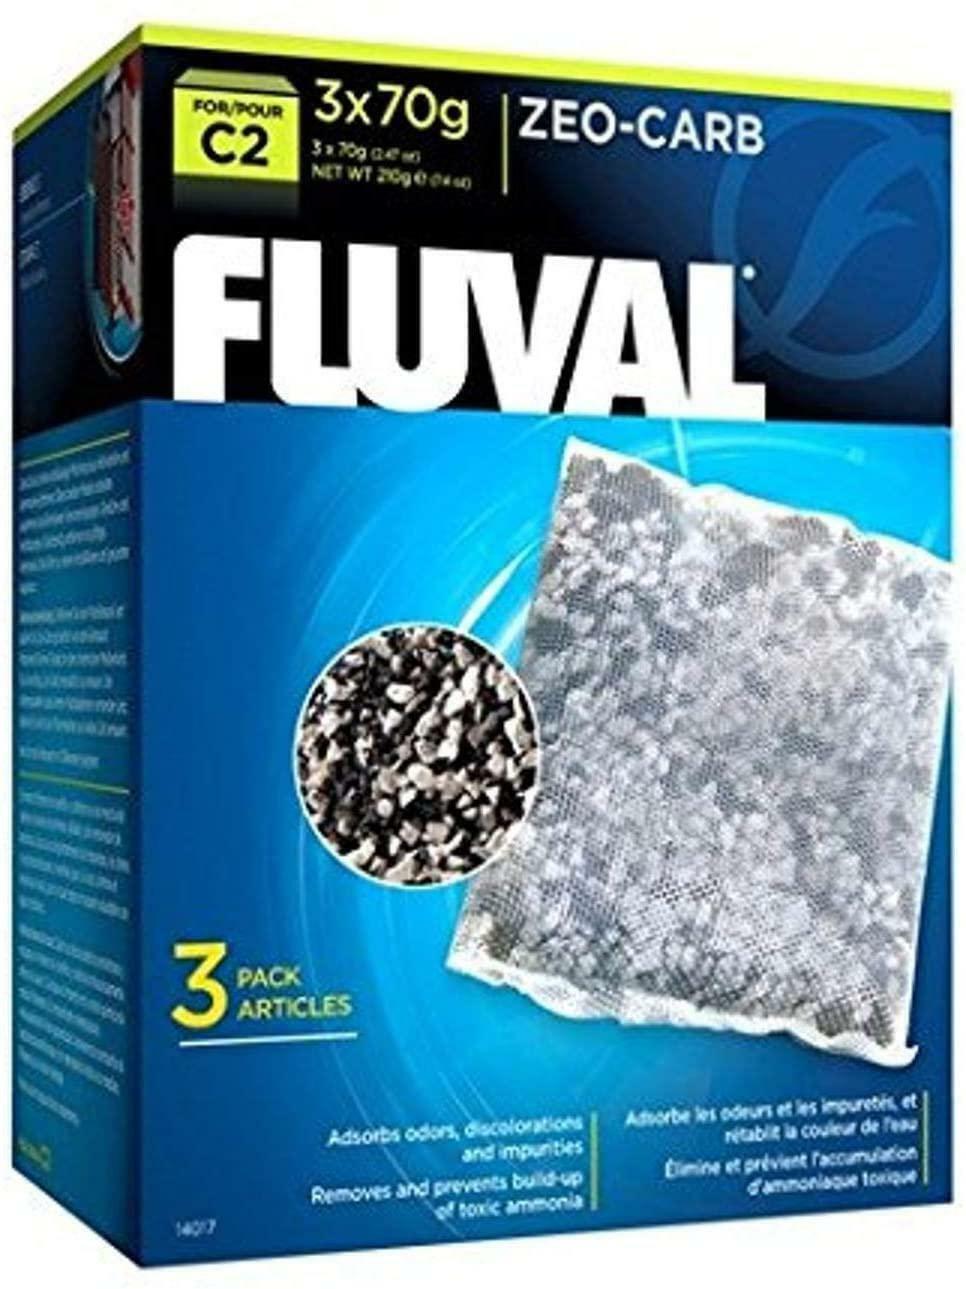 Fluval C2 Zeo-Carb Power Filter for Aquarium, Pack of 3 - $21.98